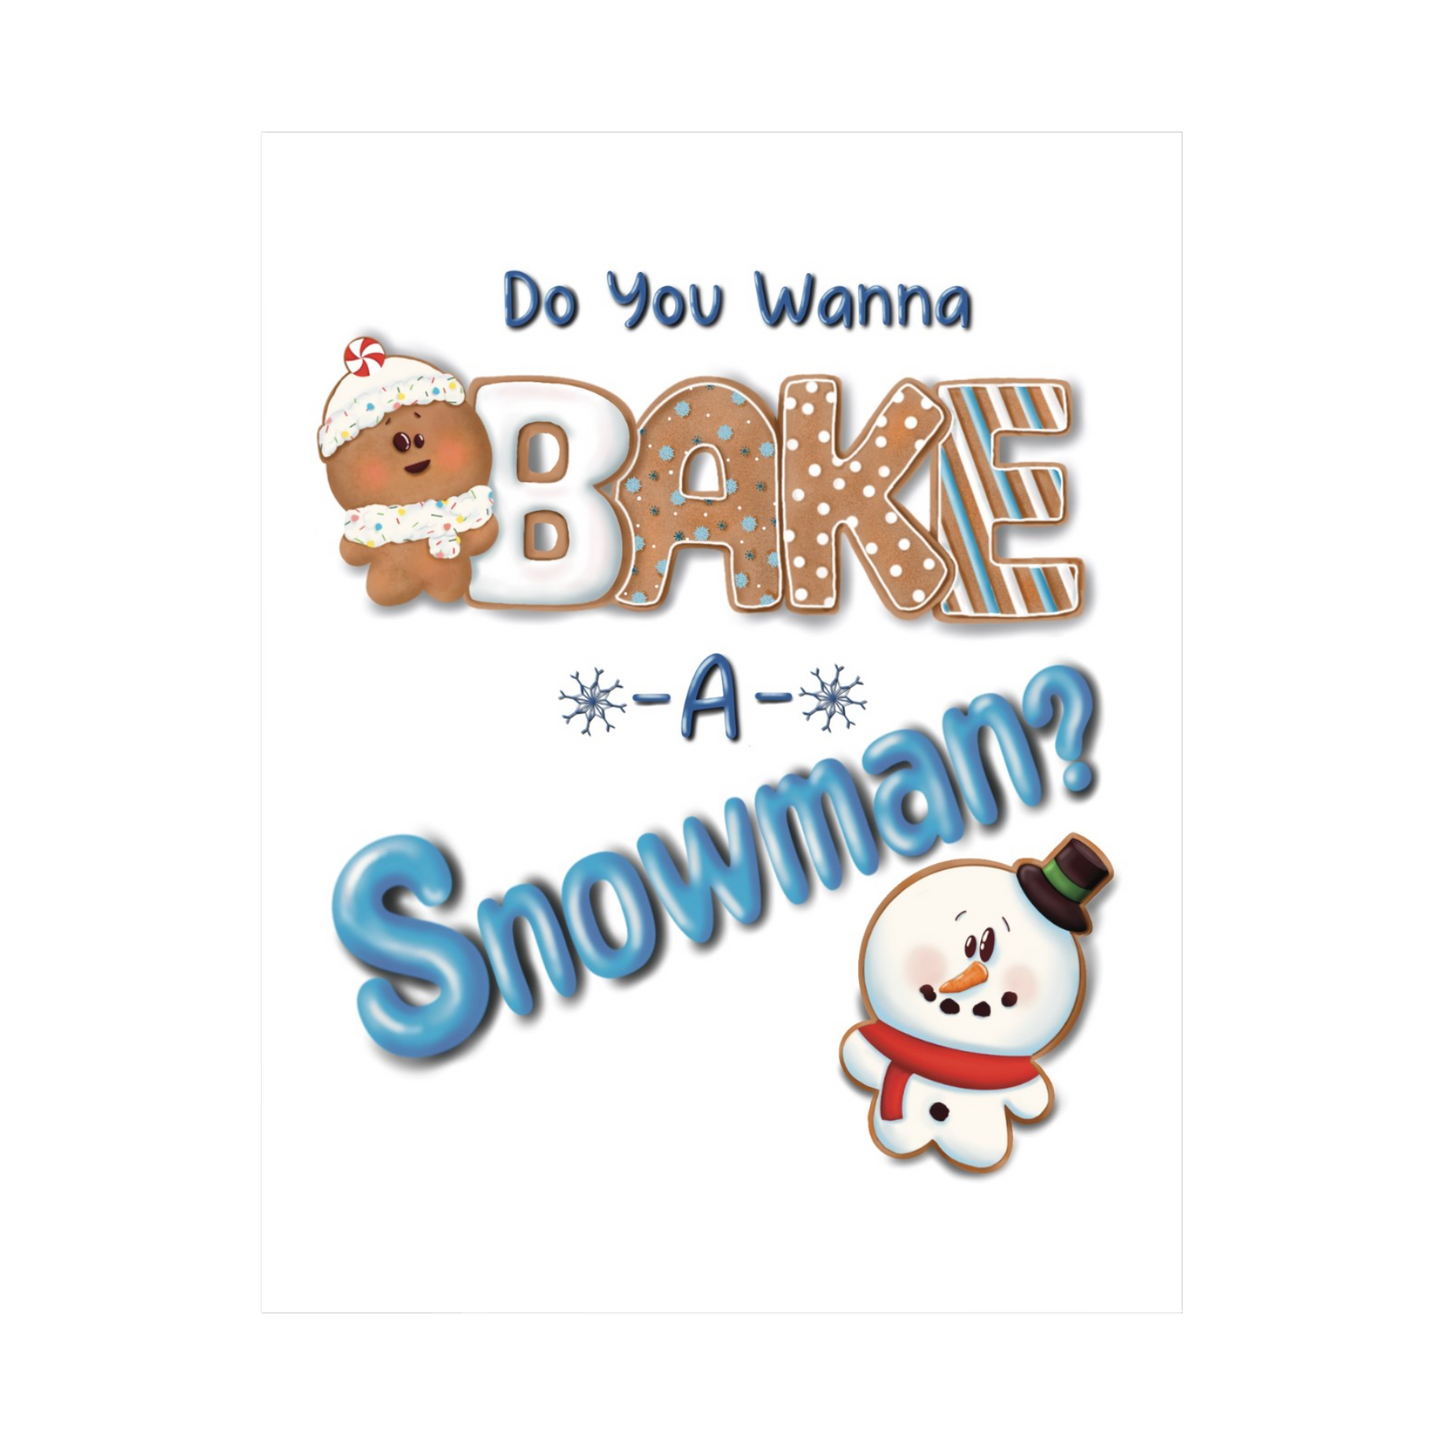 Do You Wanna Bake A Snowman?